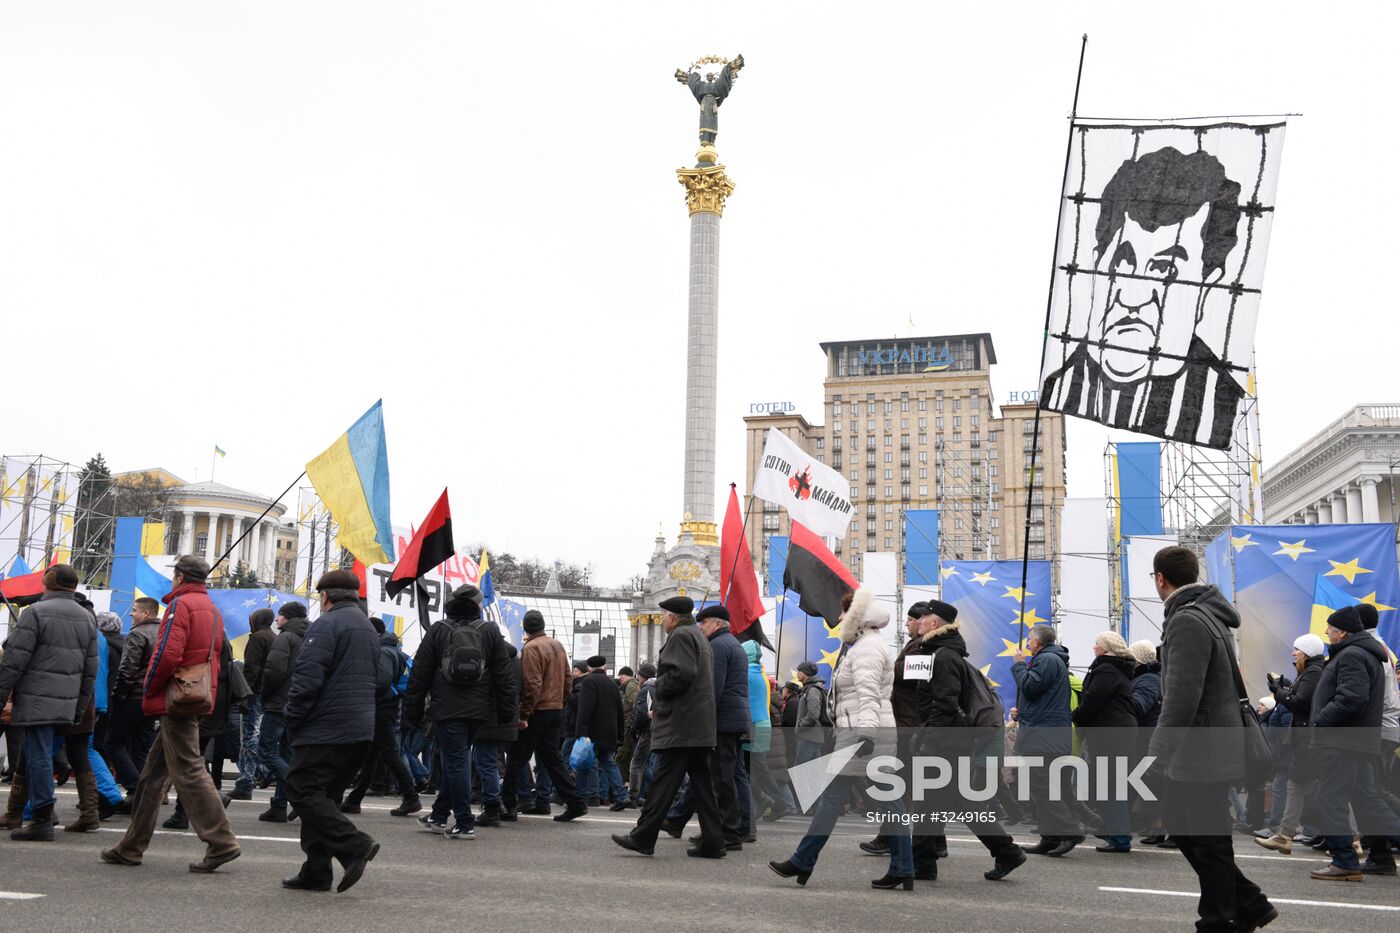 Impeachment March in Kiev